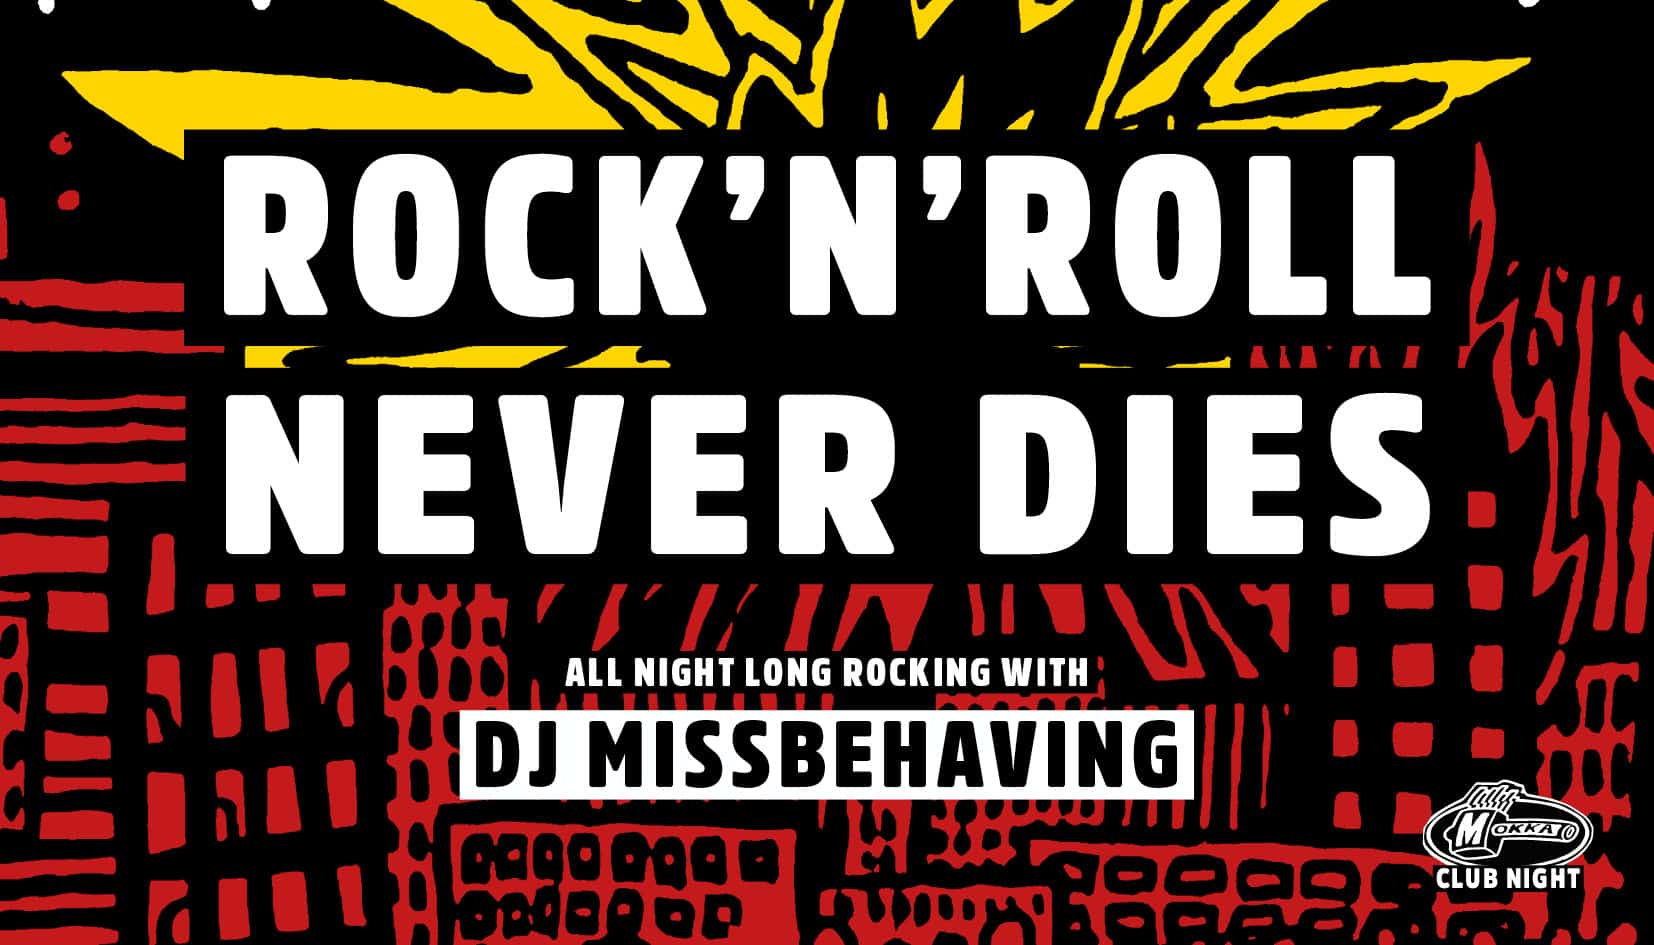 ROCK’N’ROLL NEVER DIES